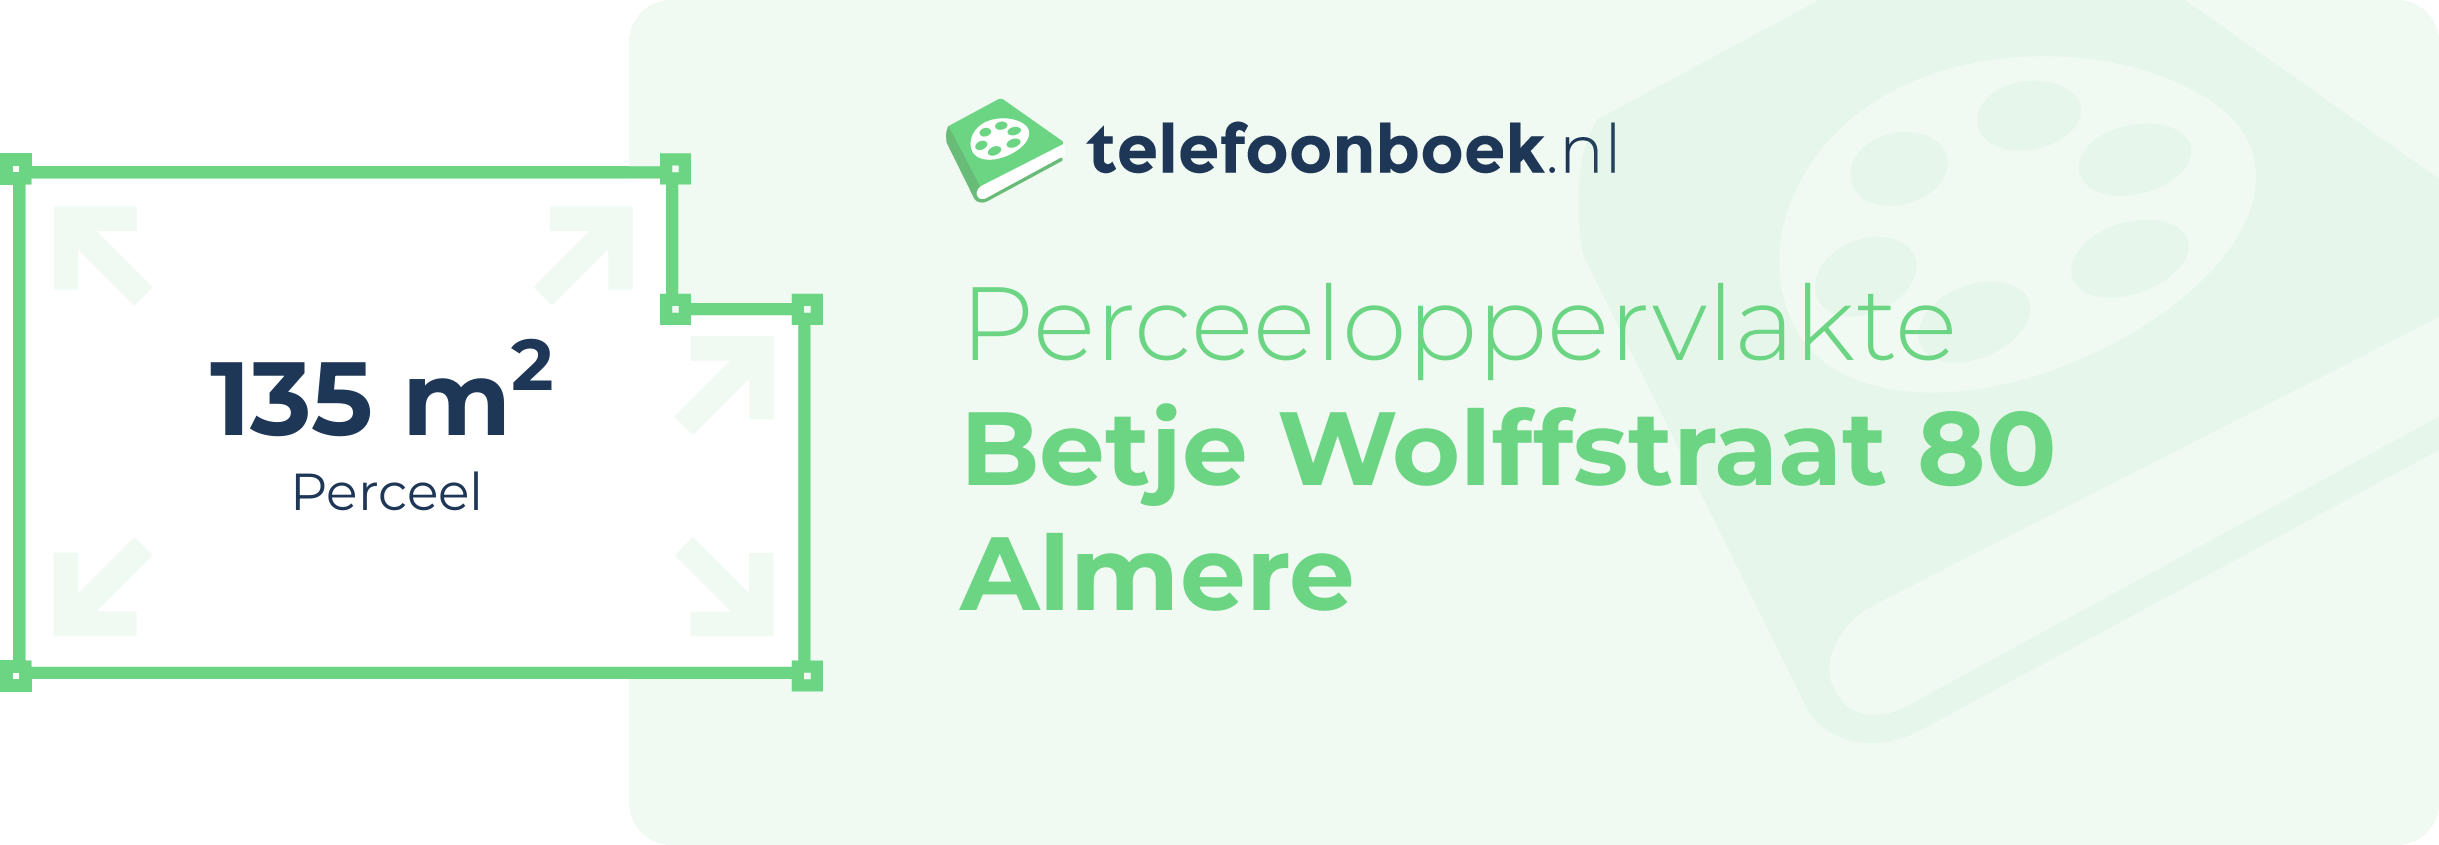 Perceeloppervlakte Betje Wolffstraat 80 Almere